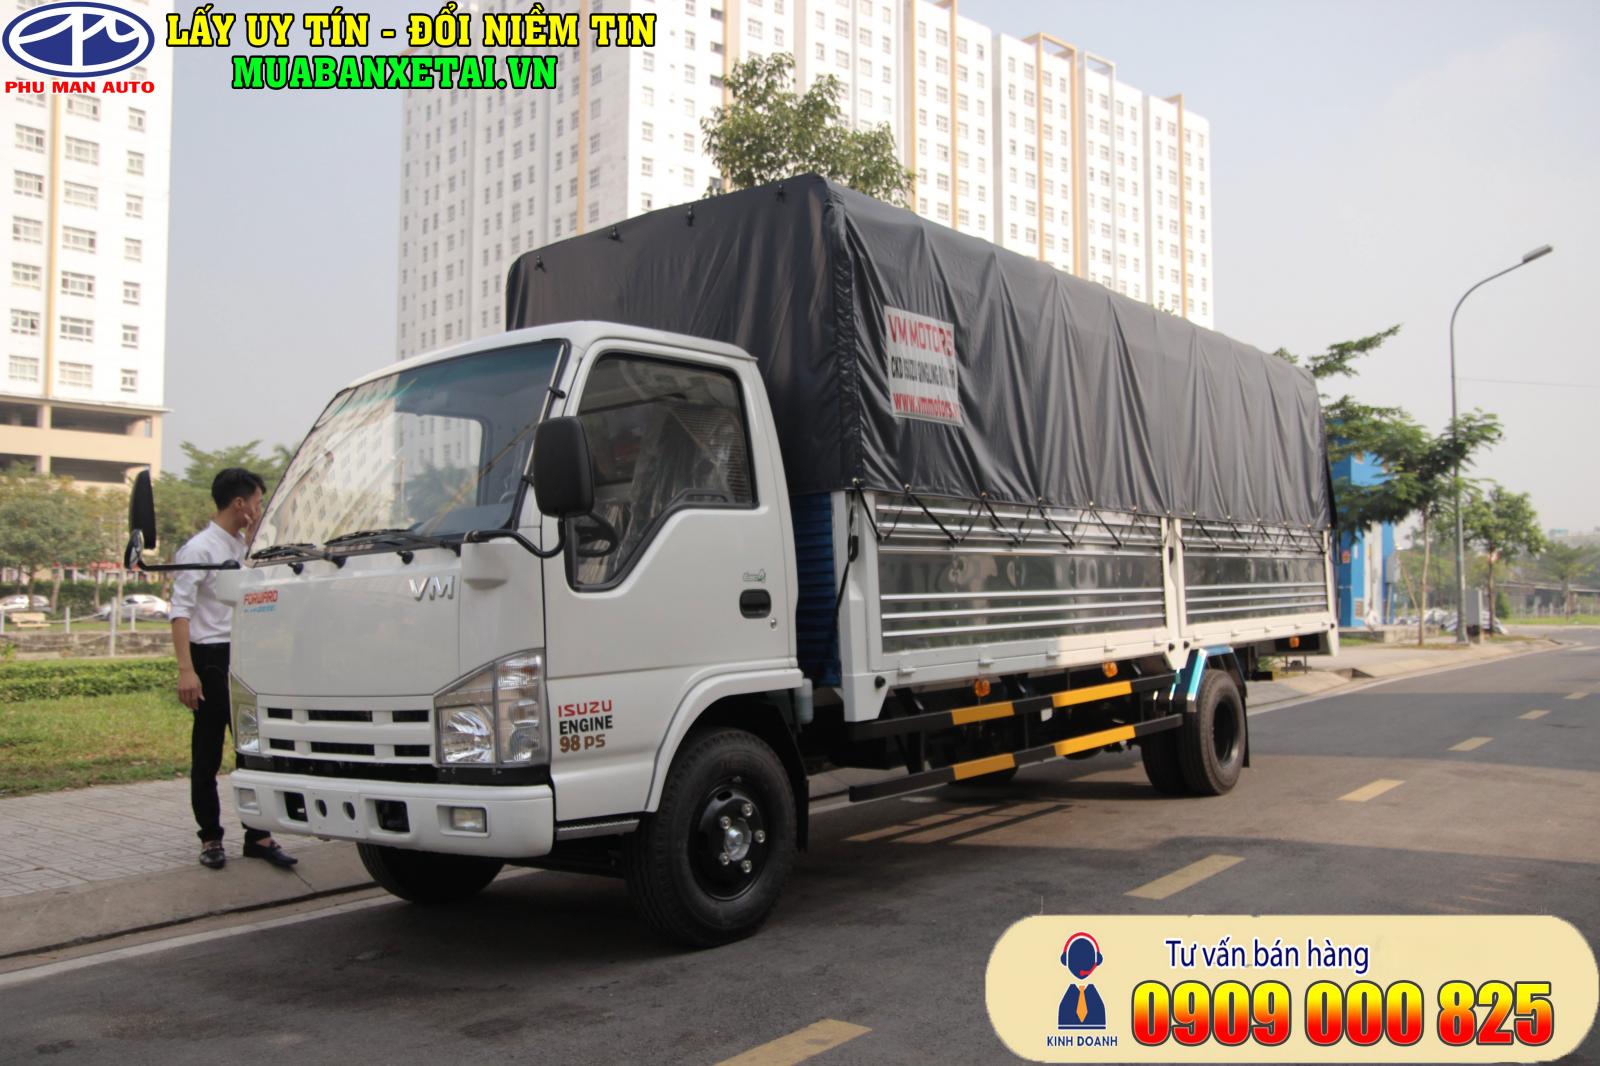 “Giá mới” xe tải Isuzu Vĩnh Phát 1.9 tấn, thùng dài 6.2 mét - 0909 000 825-3